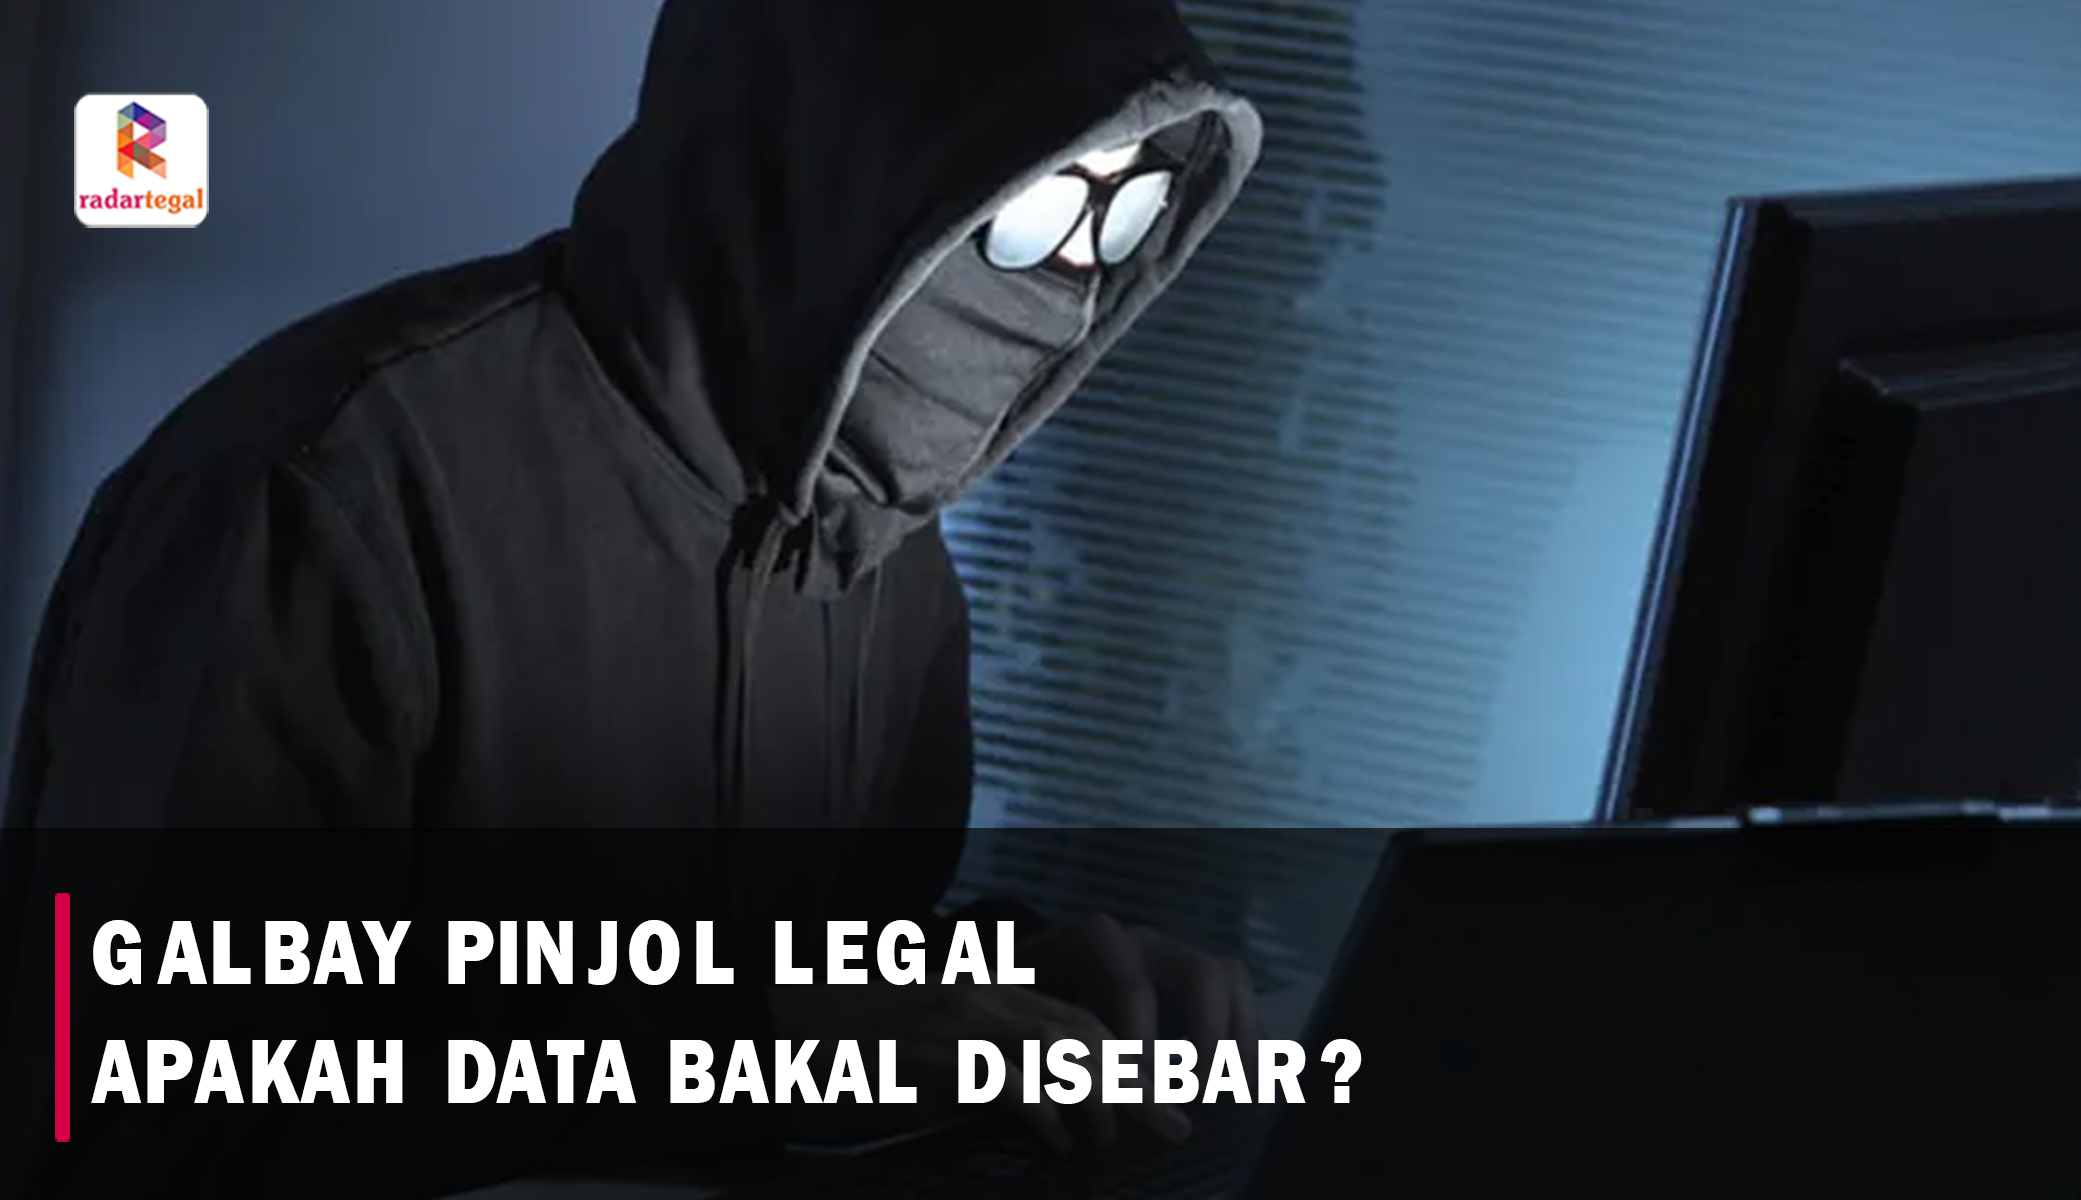 Galbay Pinjol Legal Apakah Data Pribadi Kita akan Disebar? Pahami Resikonya agar Privasi Anda Aman